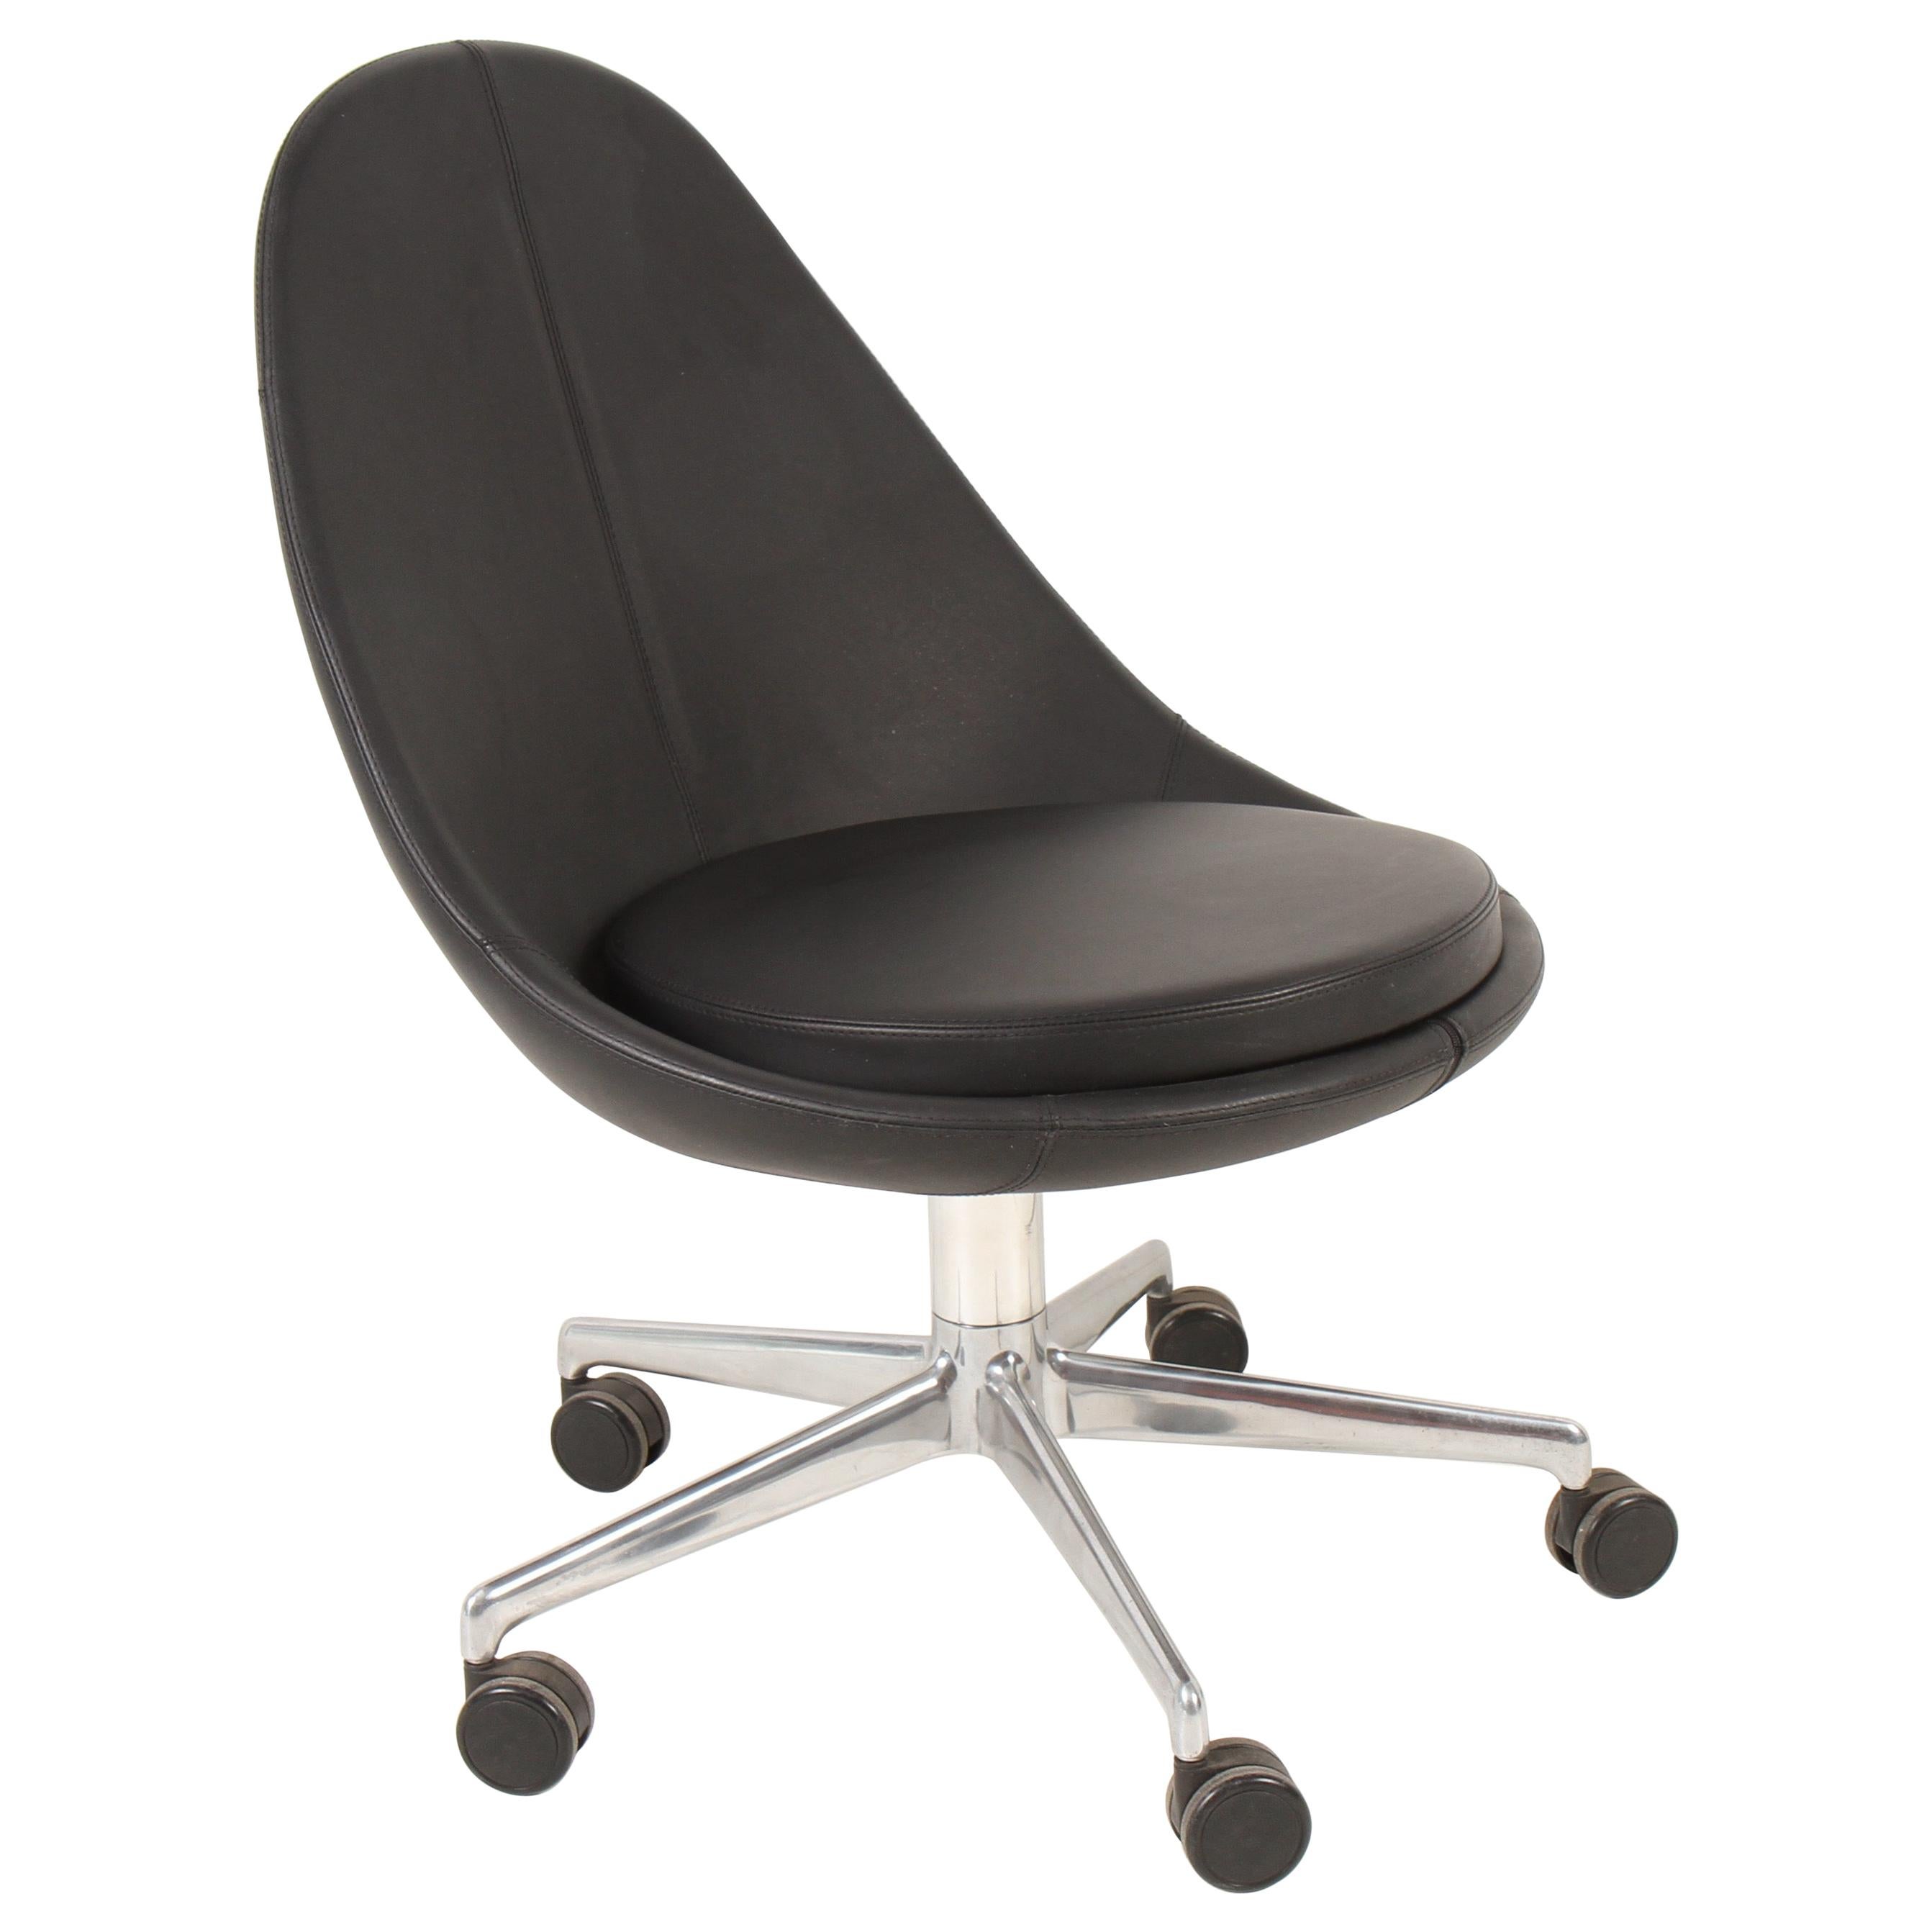 Keilhauer Juxta Desk Chair